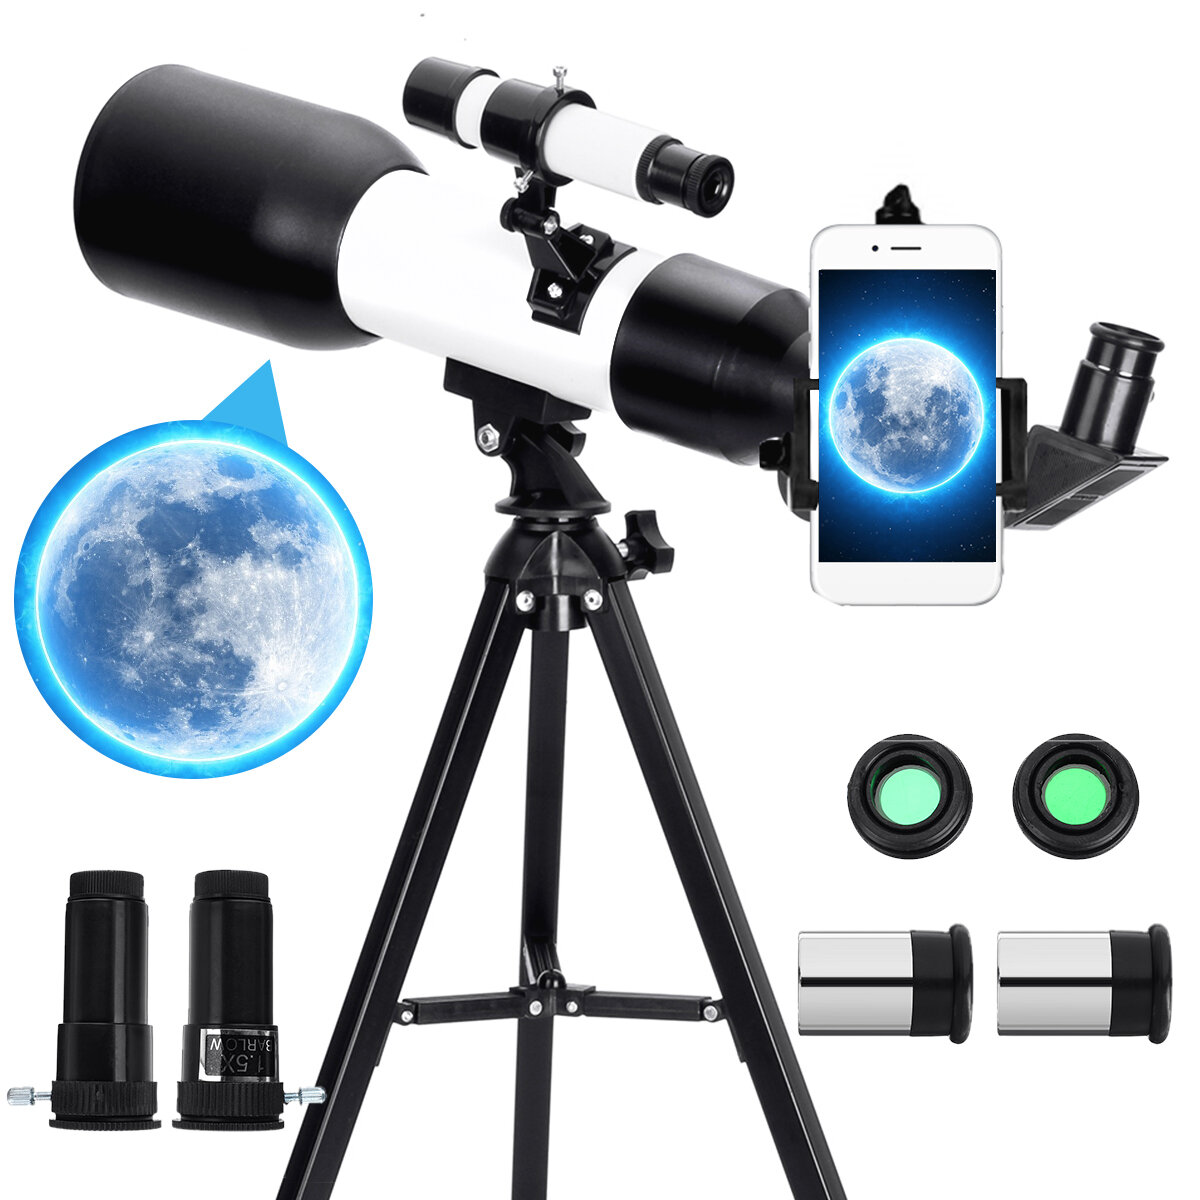 Teleskop astronomiczny Eyebre 60mm przysłona 360mm ogniskowa statyw Outdoor teleskop kempingowy z uchwytem na telefon with